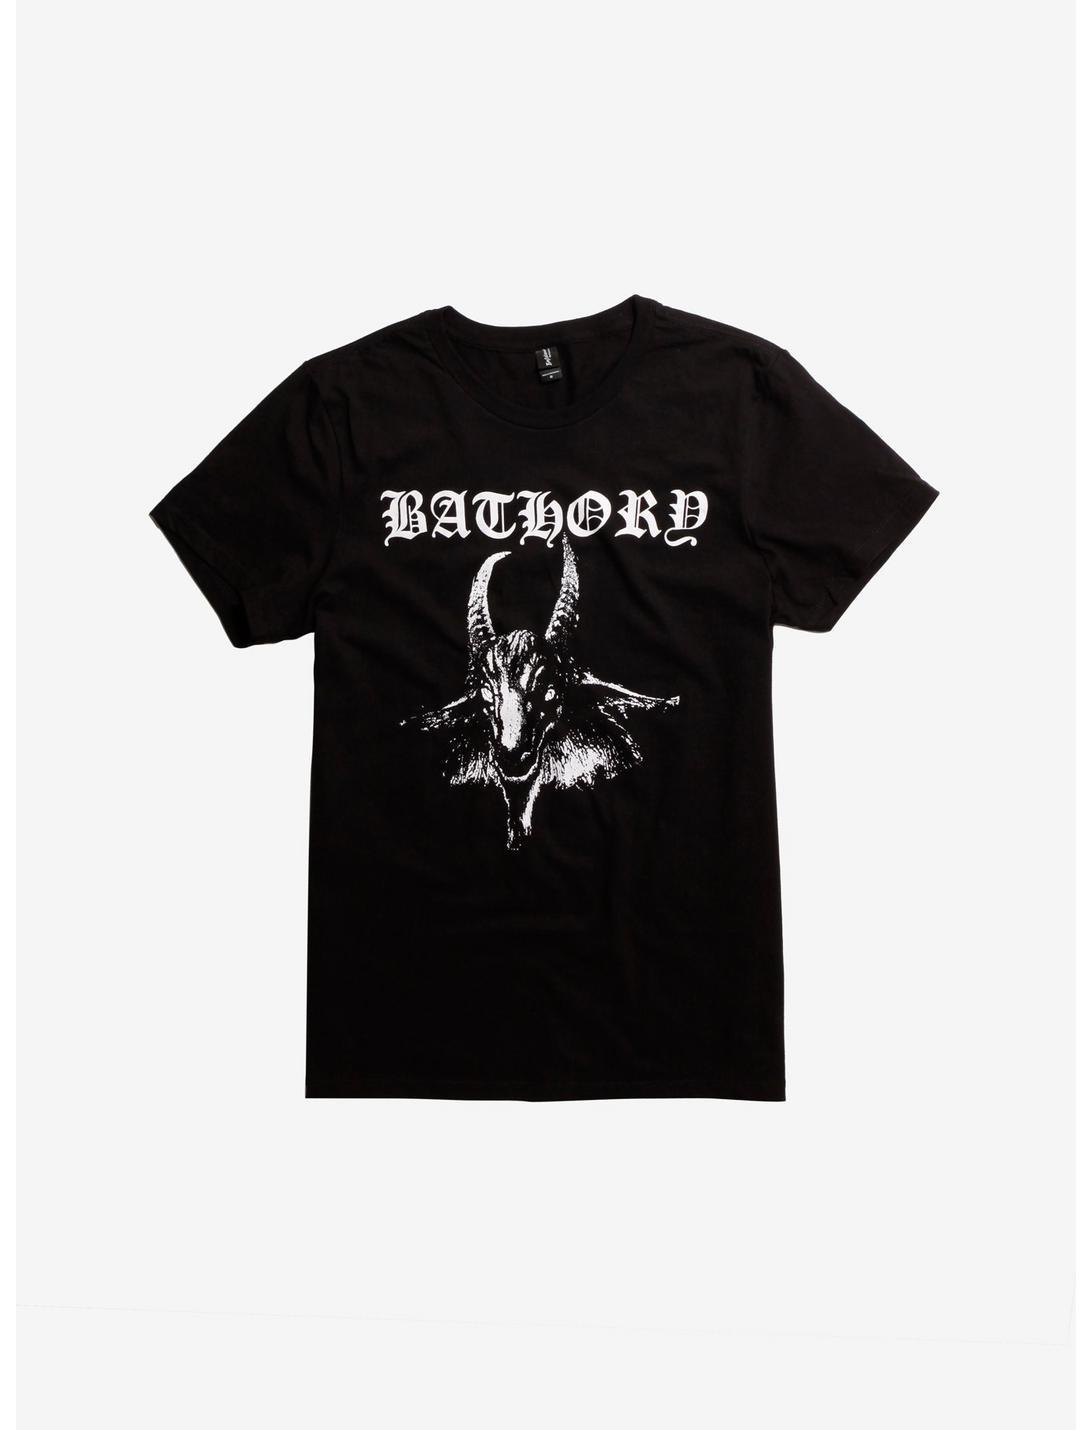 Bathory Goat Head T-Shirt | Hot Topic